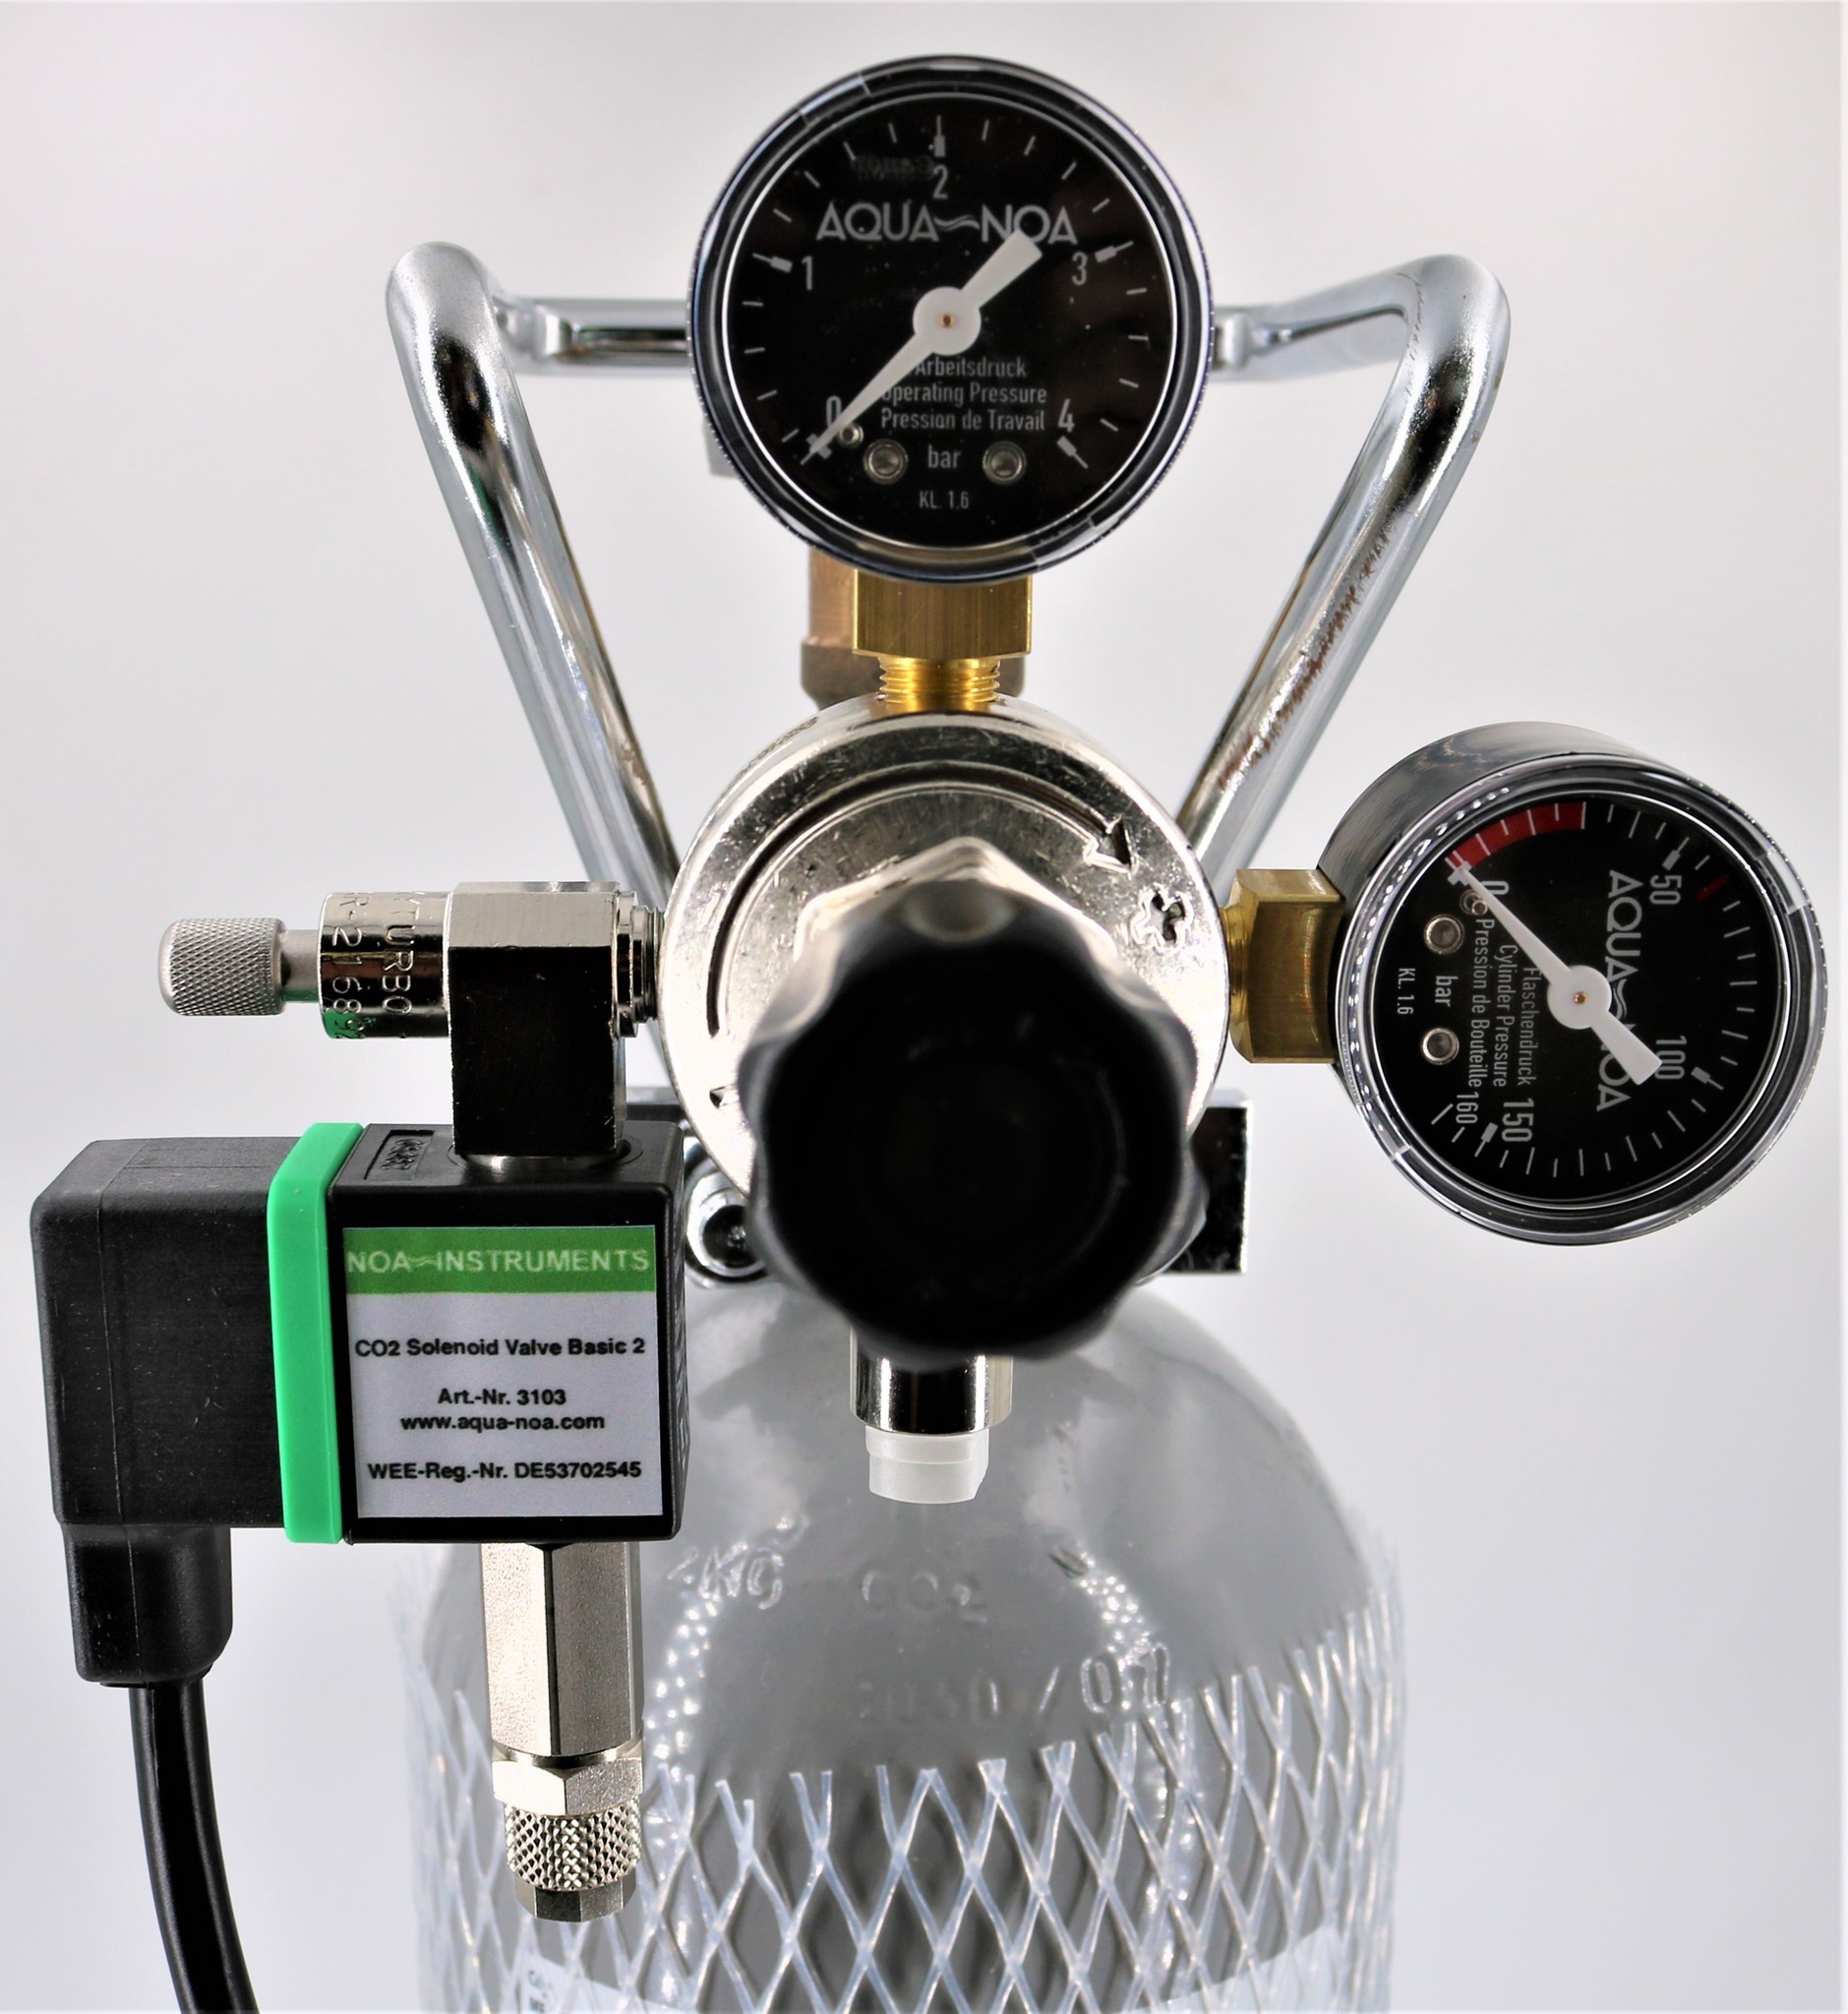 CO2 Druckminderer Profi MVR mit Magnetventil und Rückschlagventil